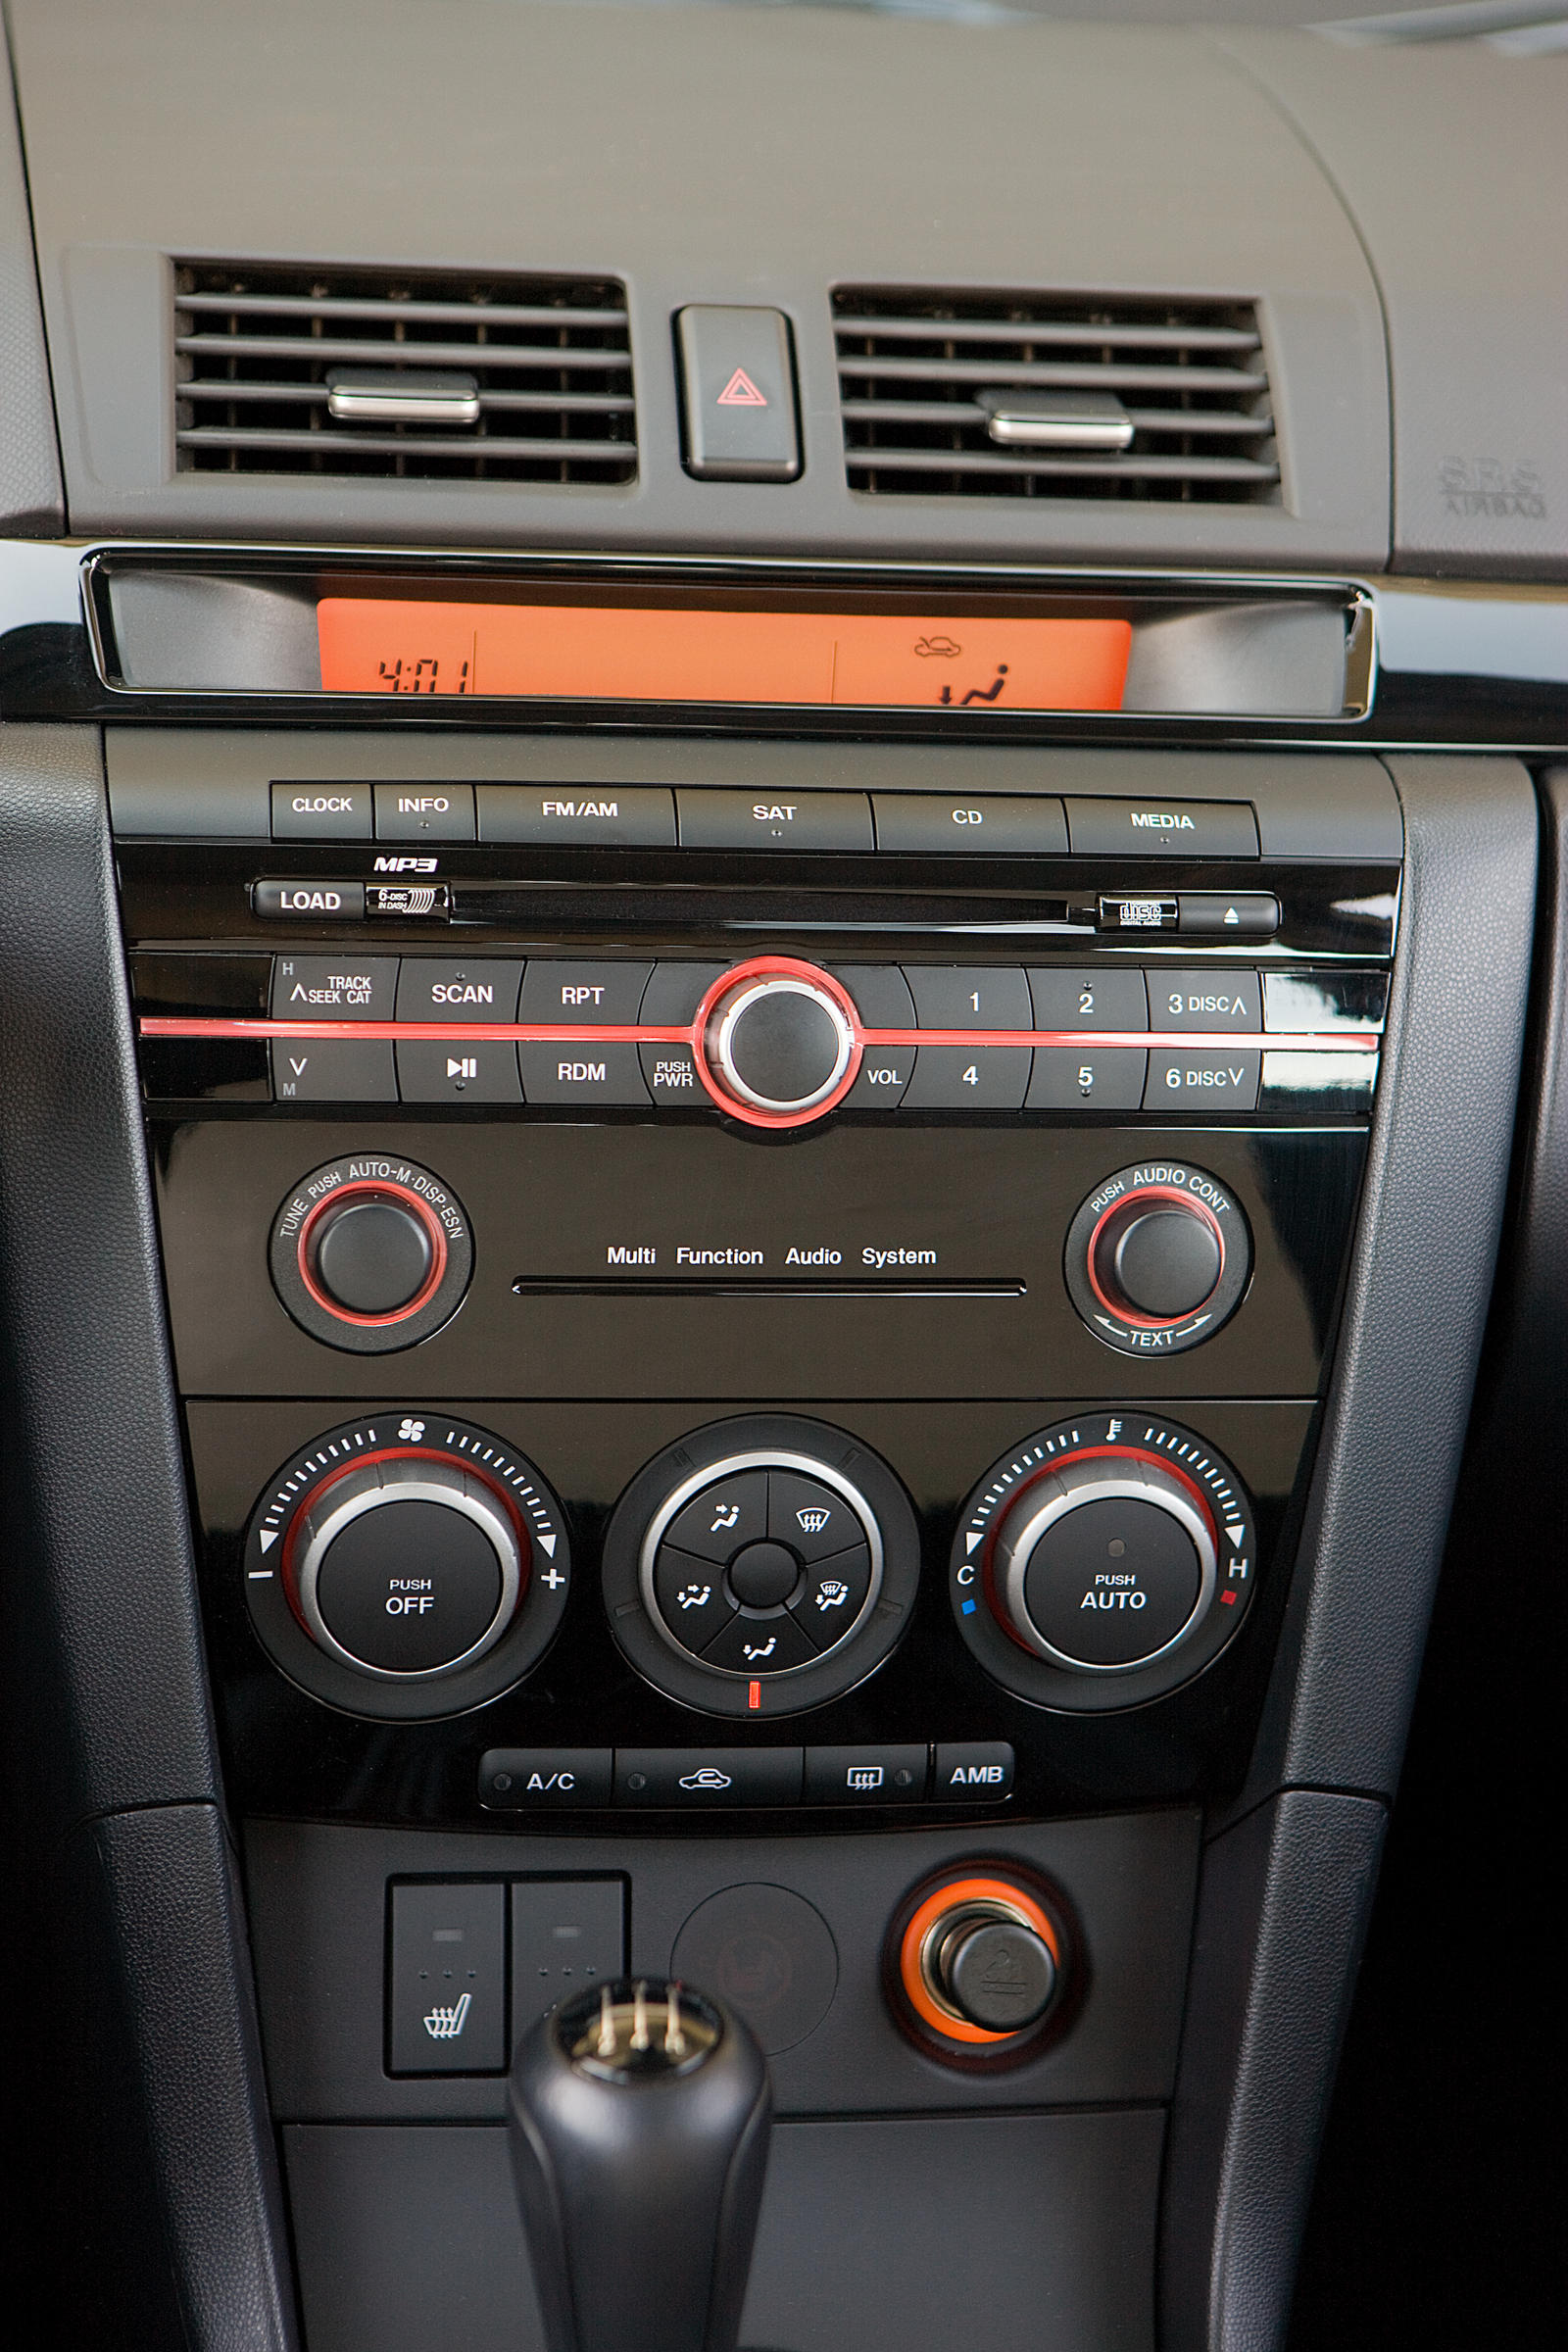 2008 Mazda 3 Sedan Interior Photos  CarBuzz